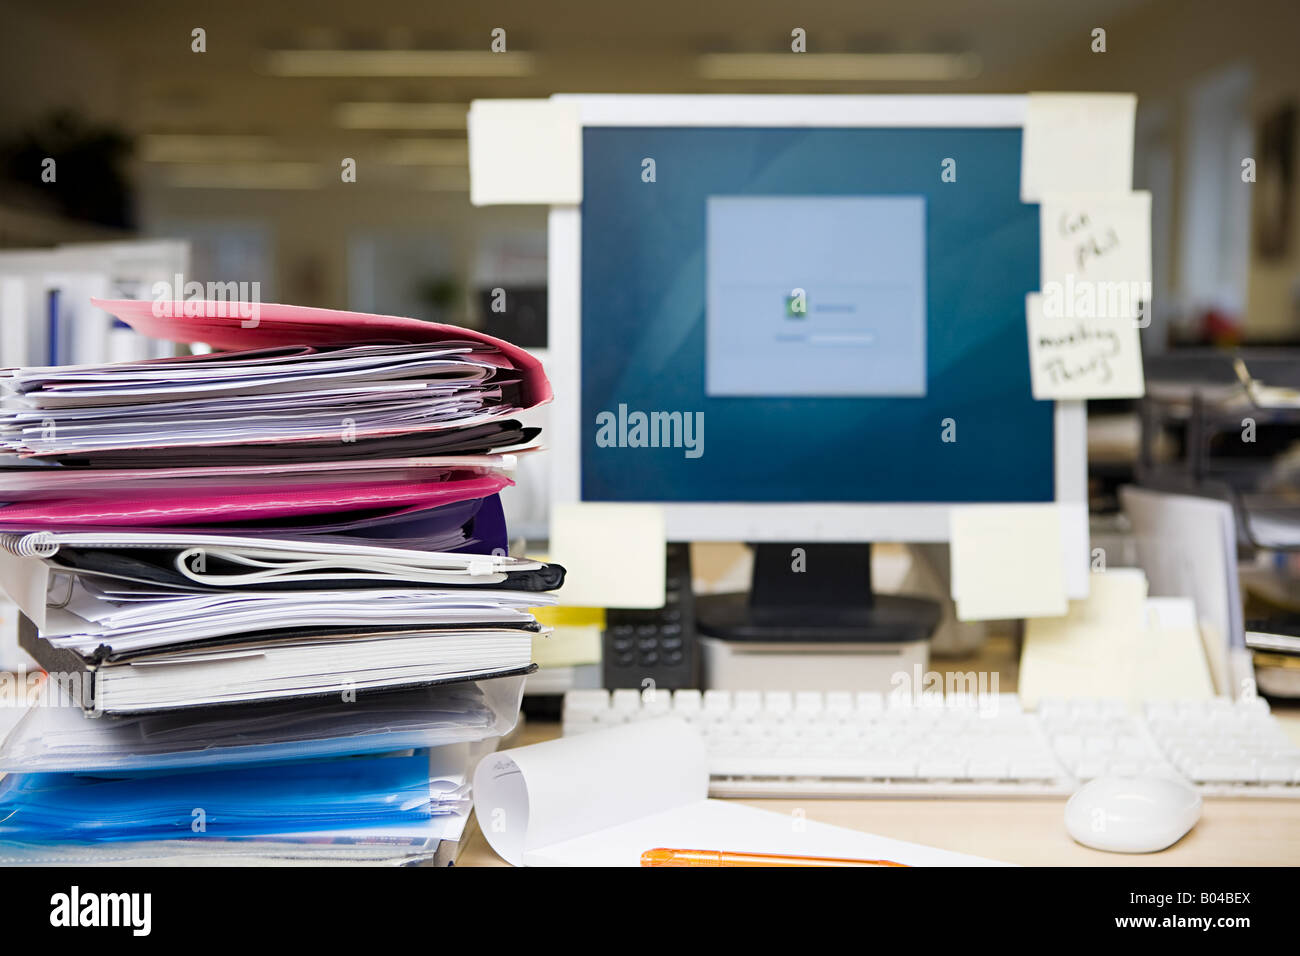 Unaufgeräumten Schreibtisch Stockfotografie - Alamy